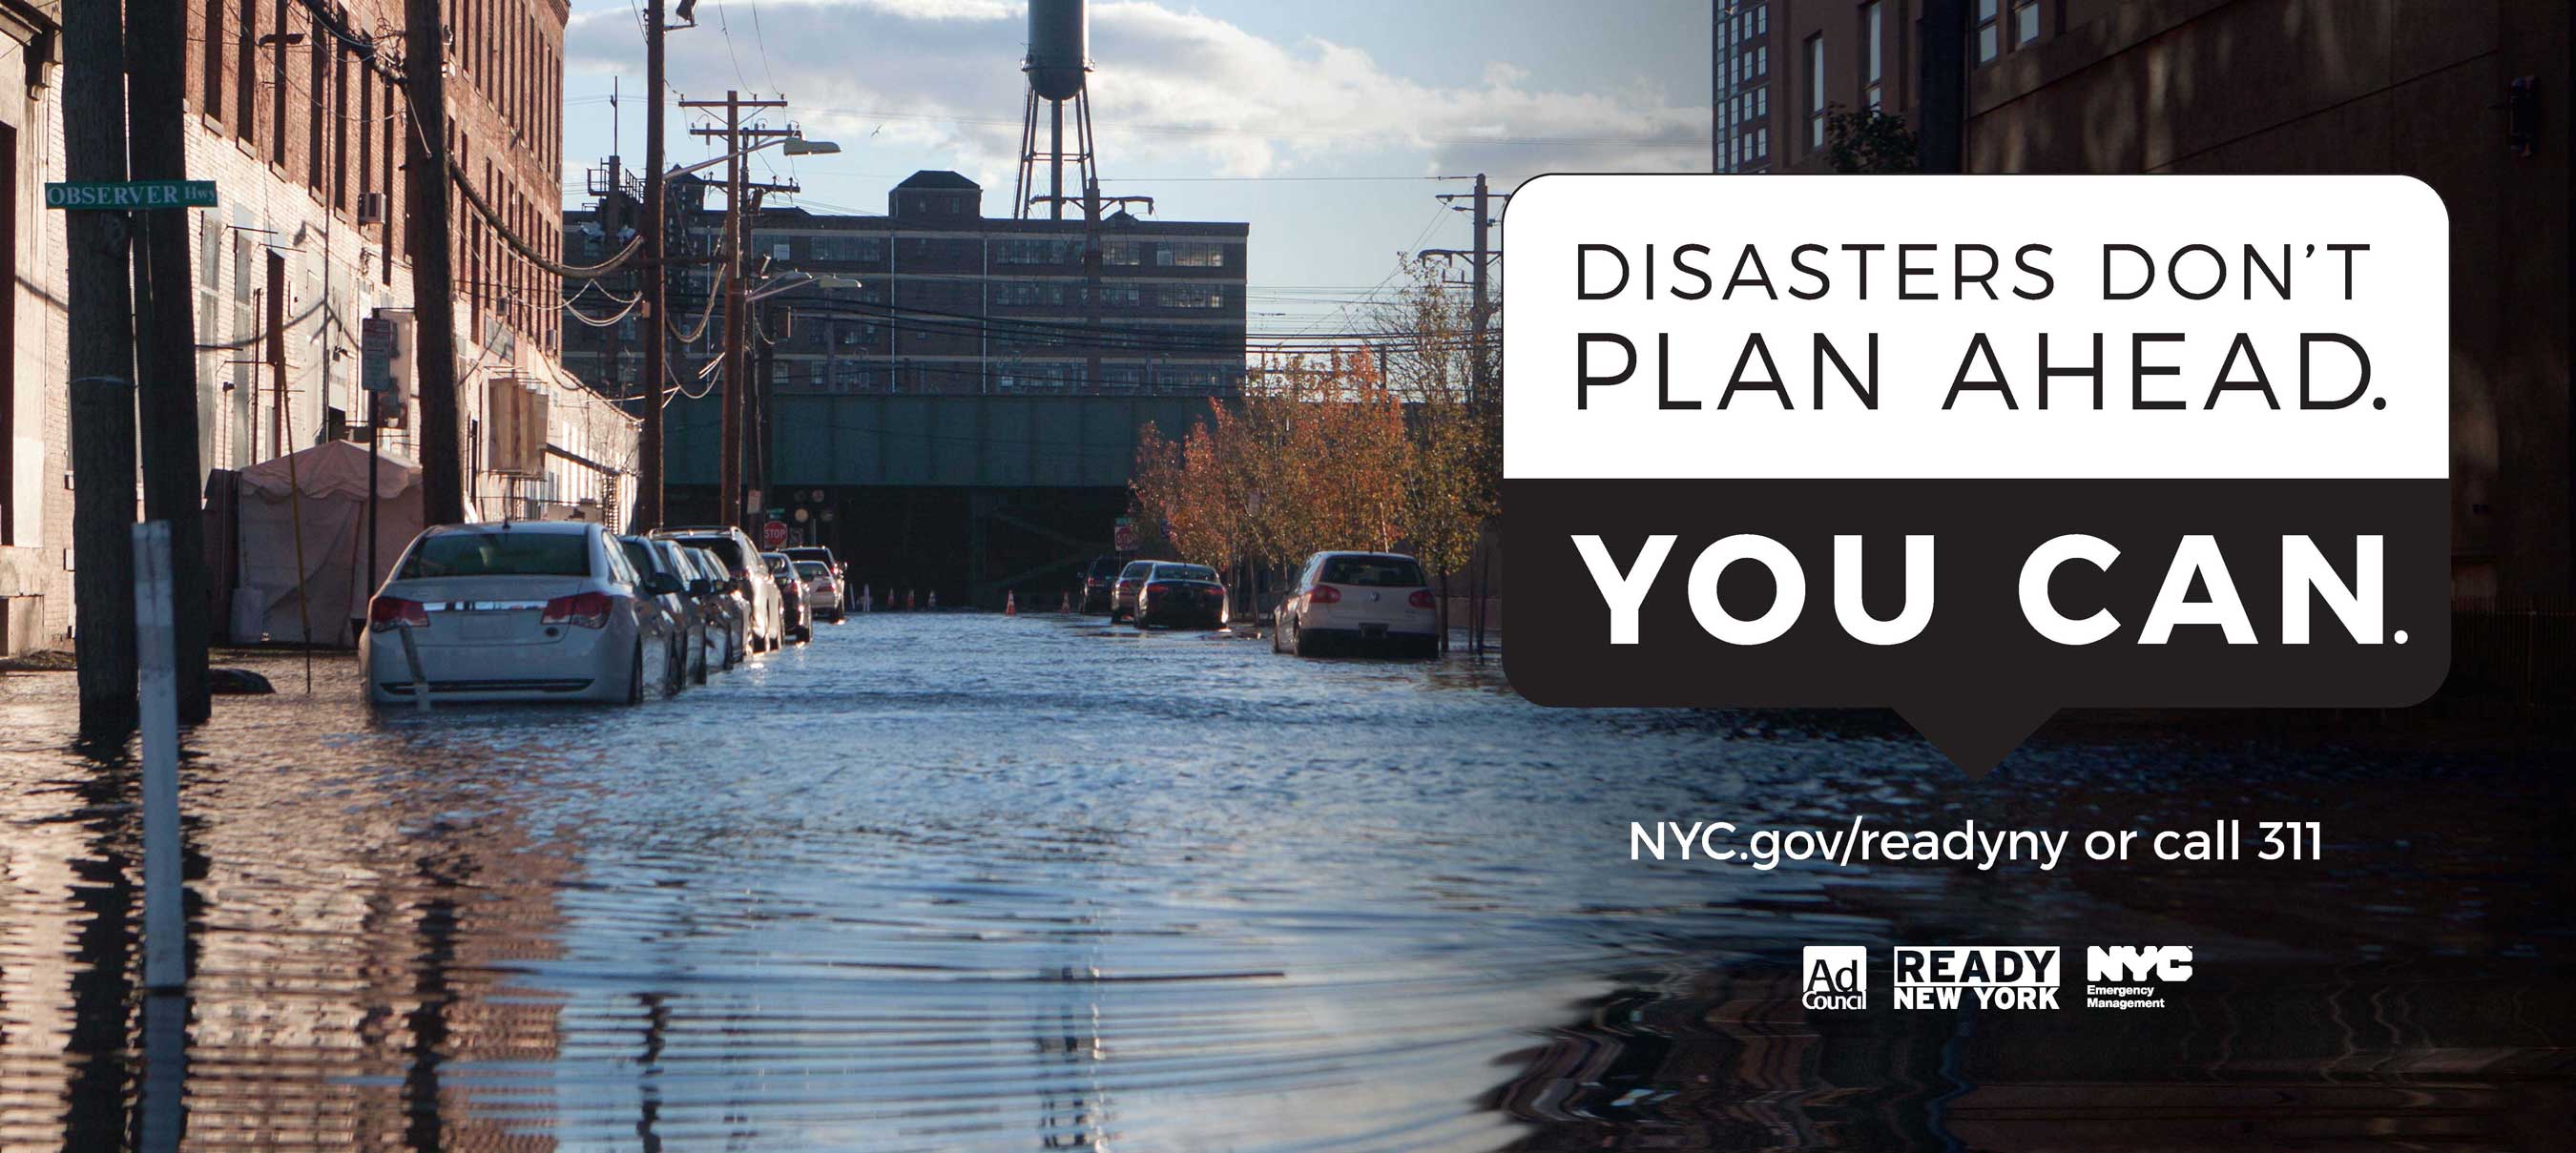 Disasters Don't Plan Ahead Flood NYC Billboard